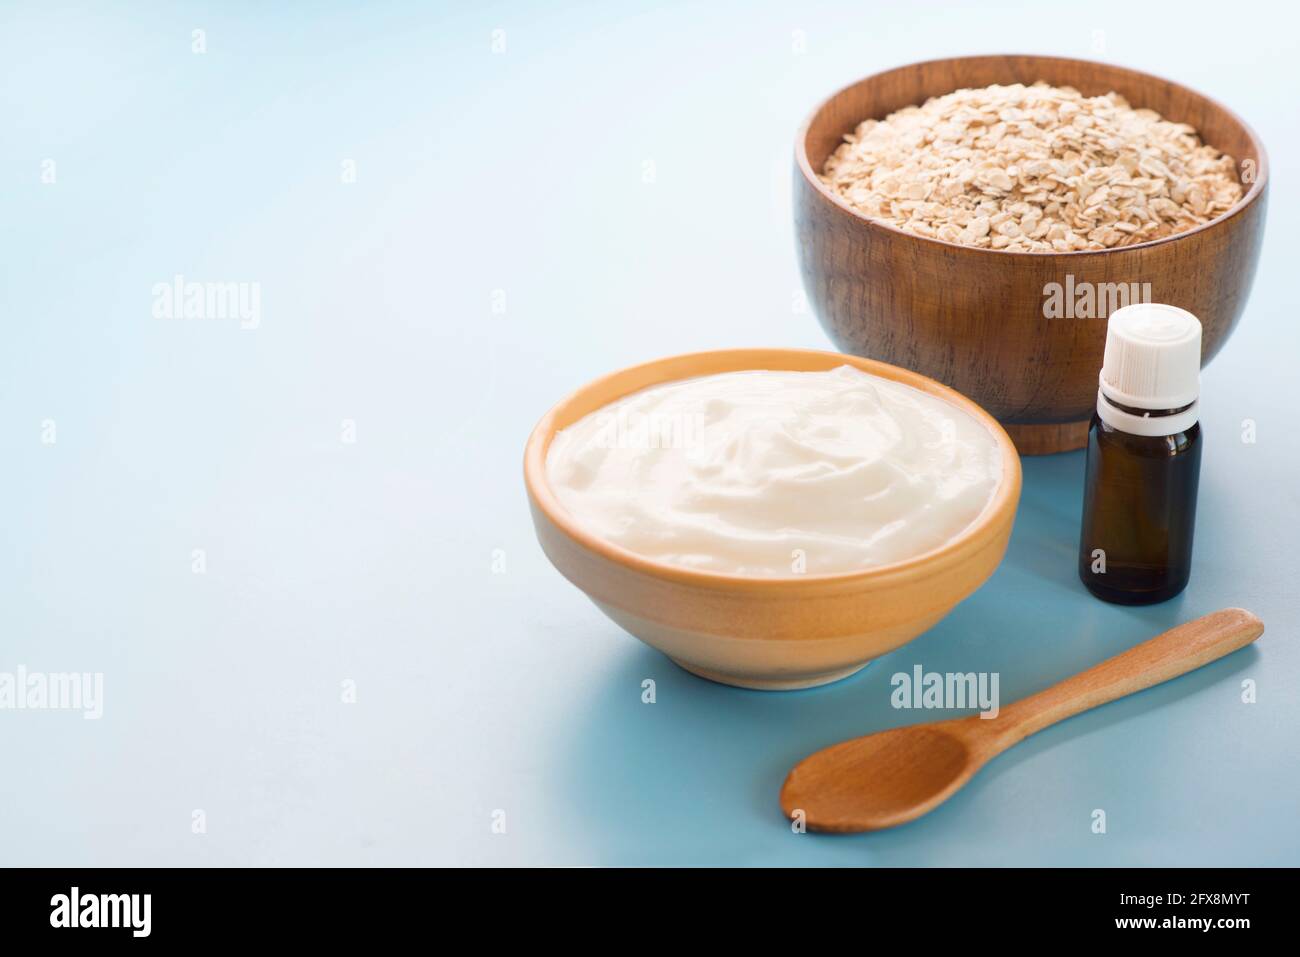 Joghurt Maske Hafer und essentielles Öl Stockfotografie - Alamy